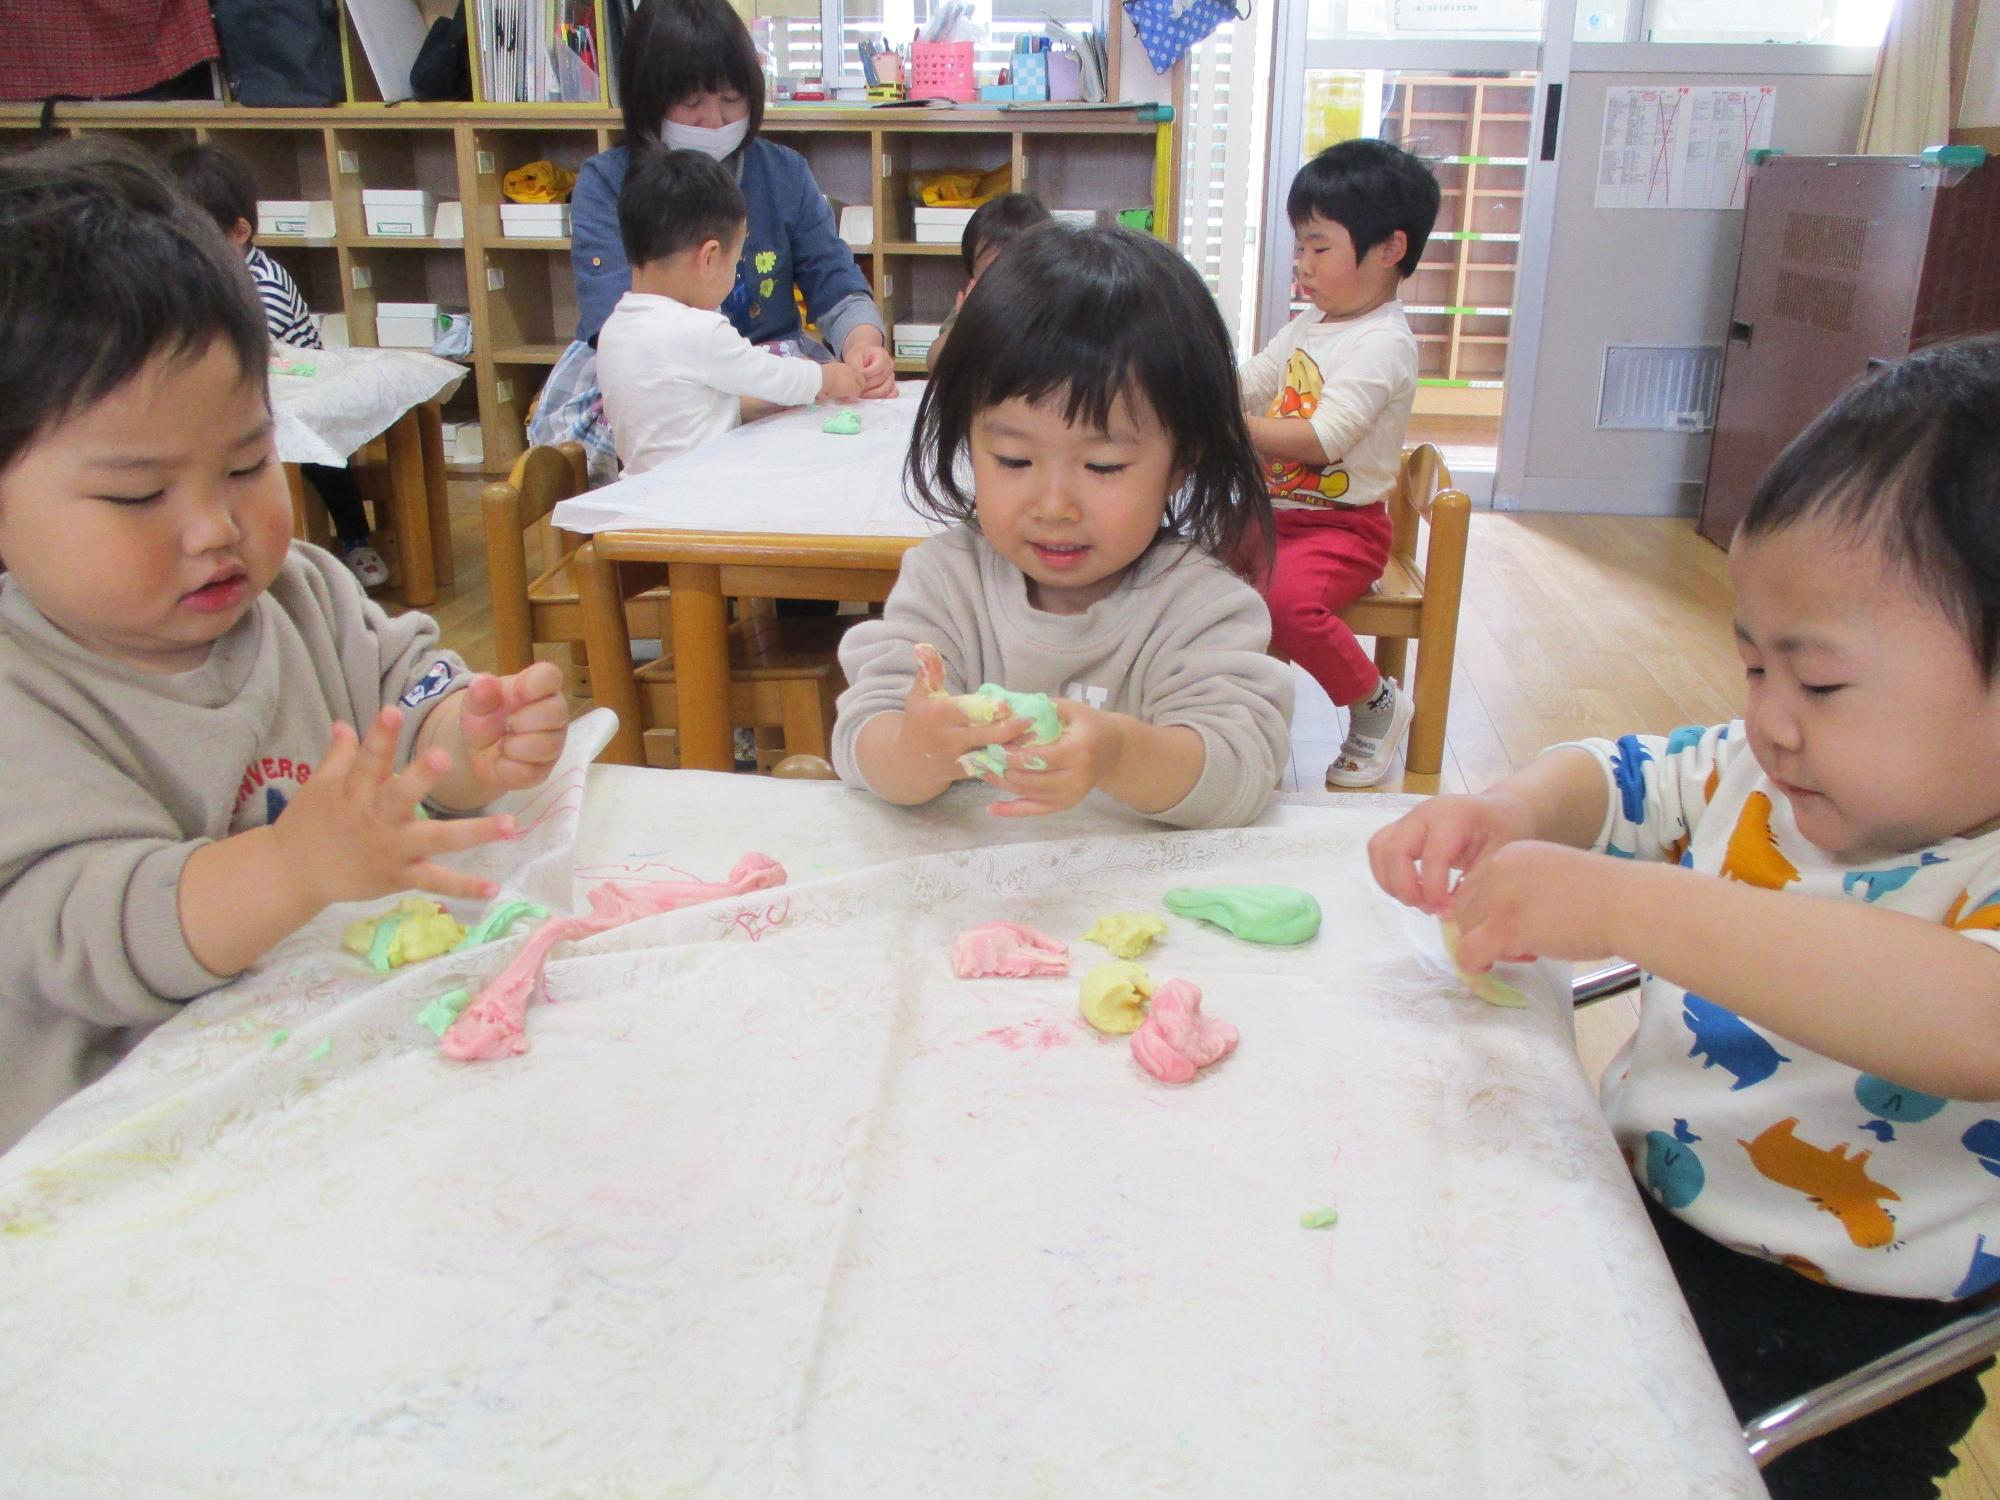 小麦粉粘土で遊ぶつぼみ2組の子供たちです。